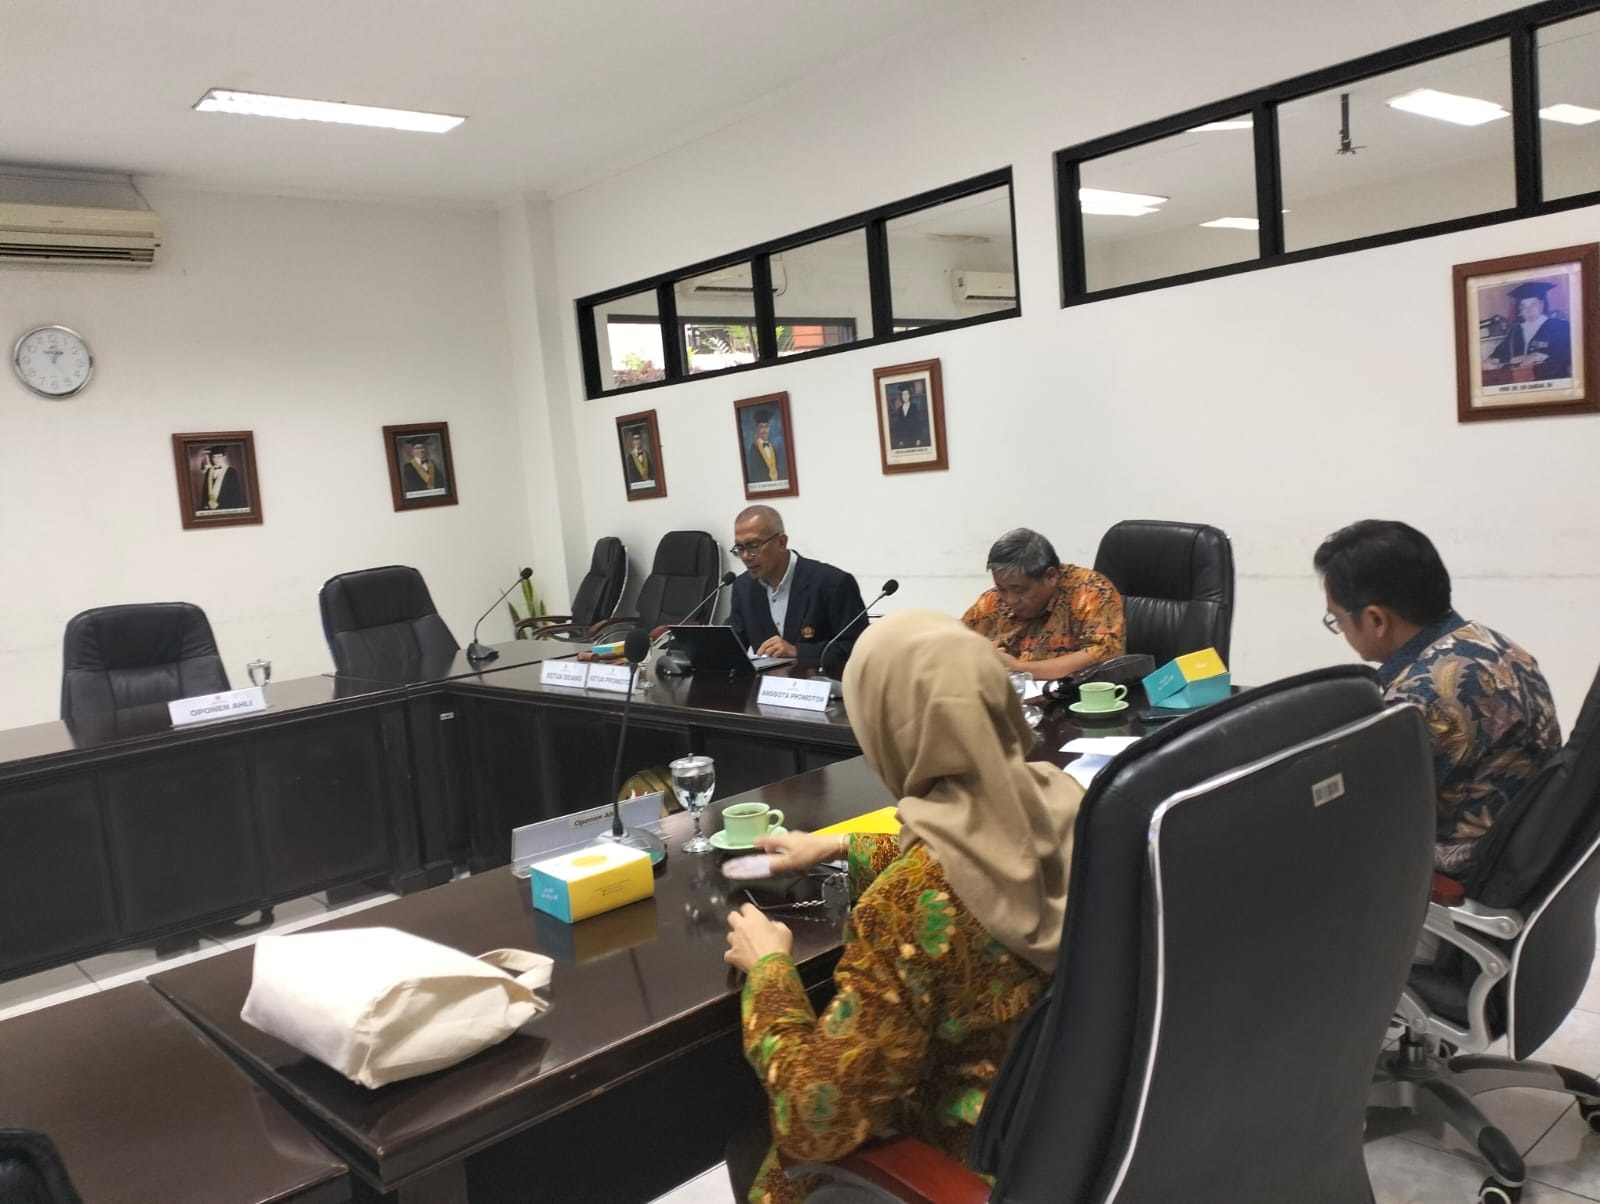 Seminar usulan riset Doktoral Univ Negeri Padjajaran Bandung ,:Law of arbitration ,dengan nilai zuma cumlaude